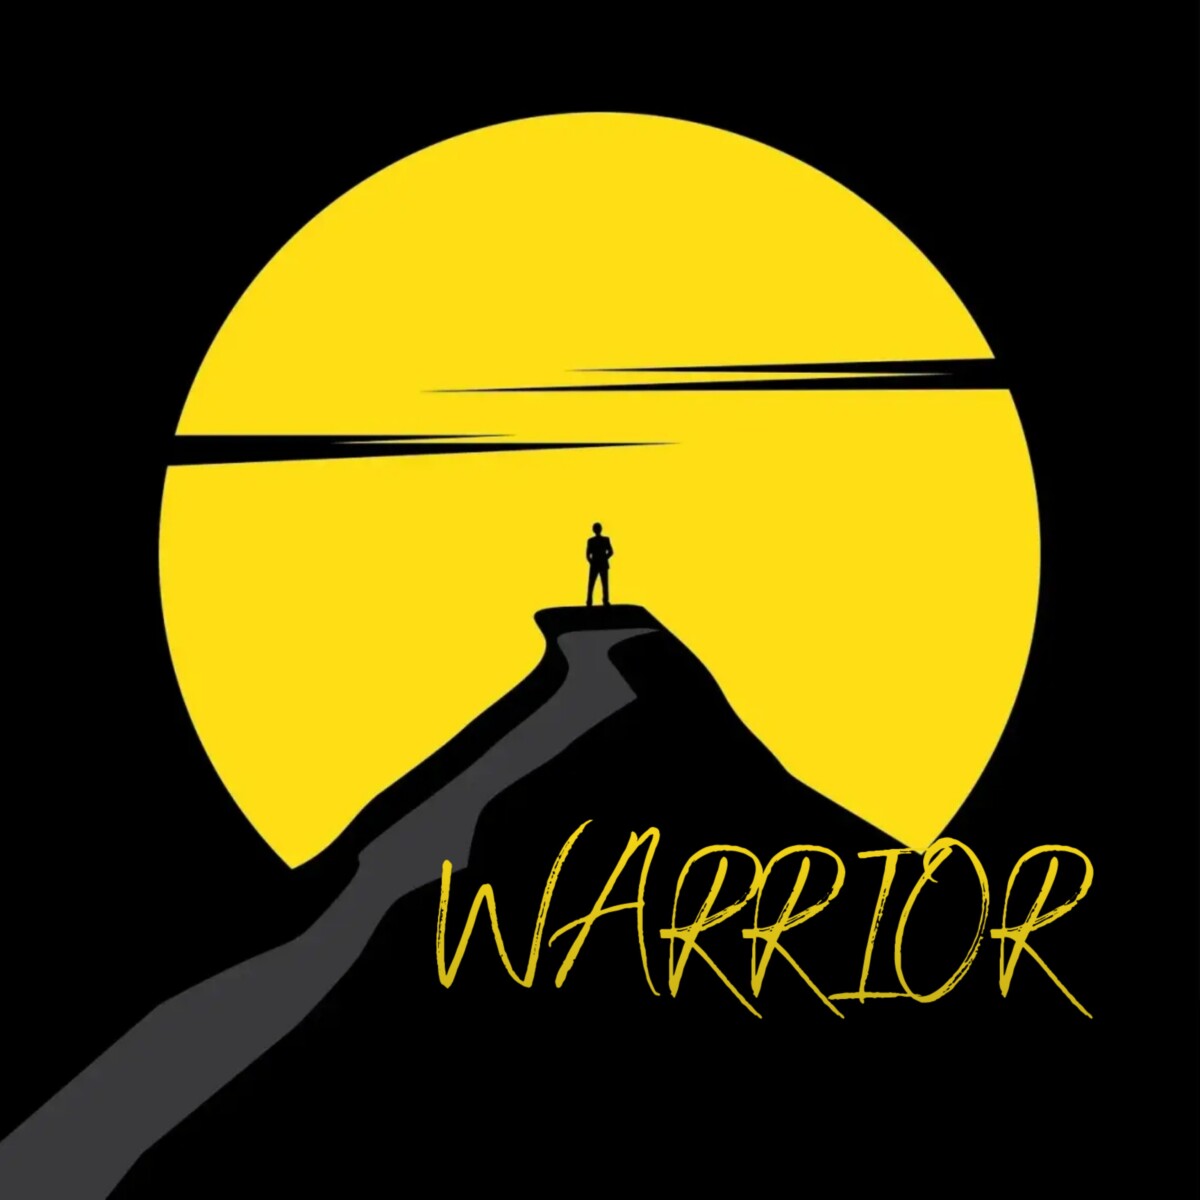 Bravoprinz – “Warrior” Feat Mr. Legend